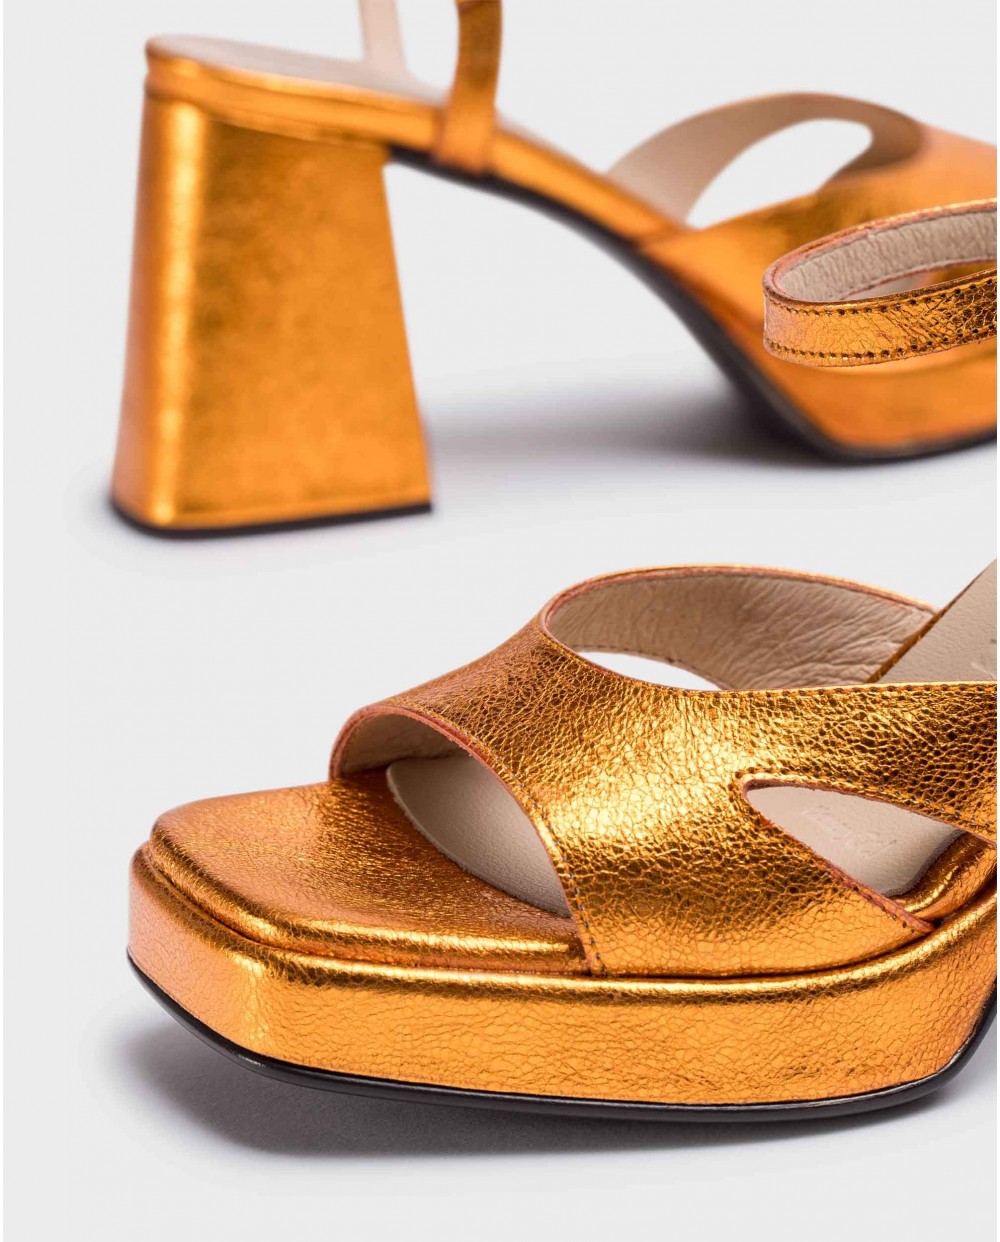 Orange Frida sandals